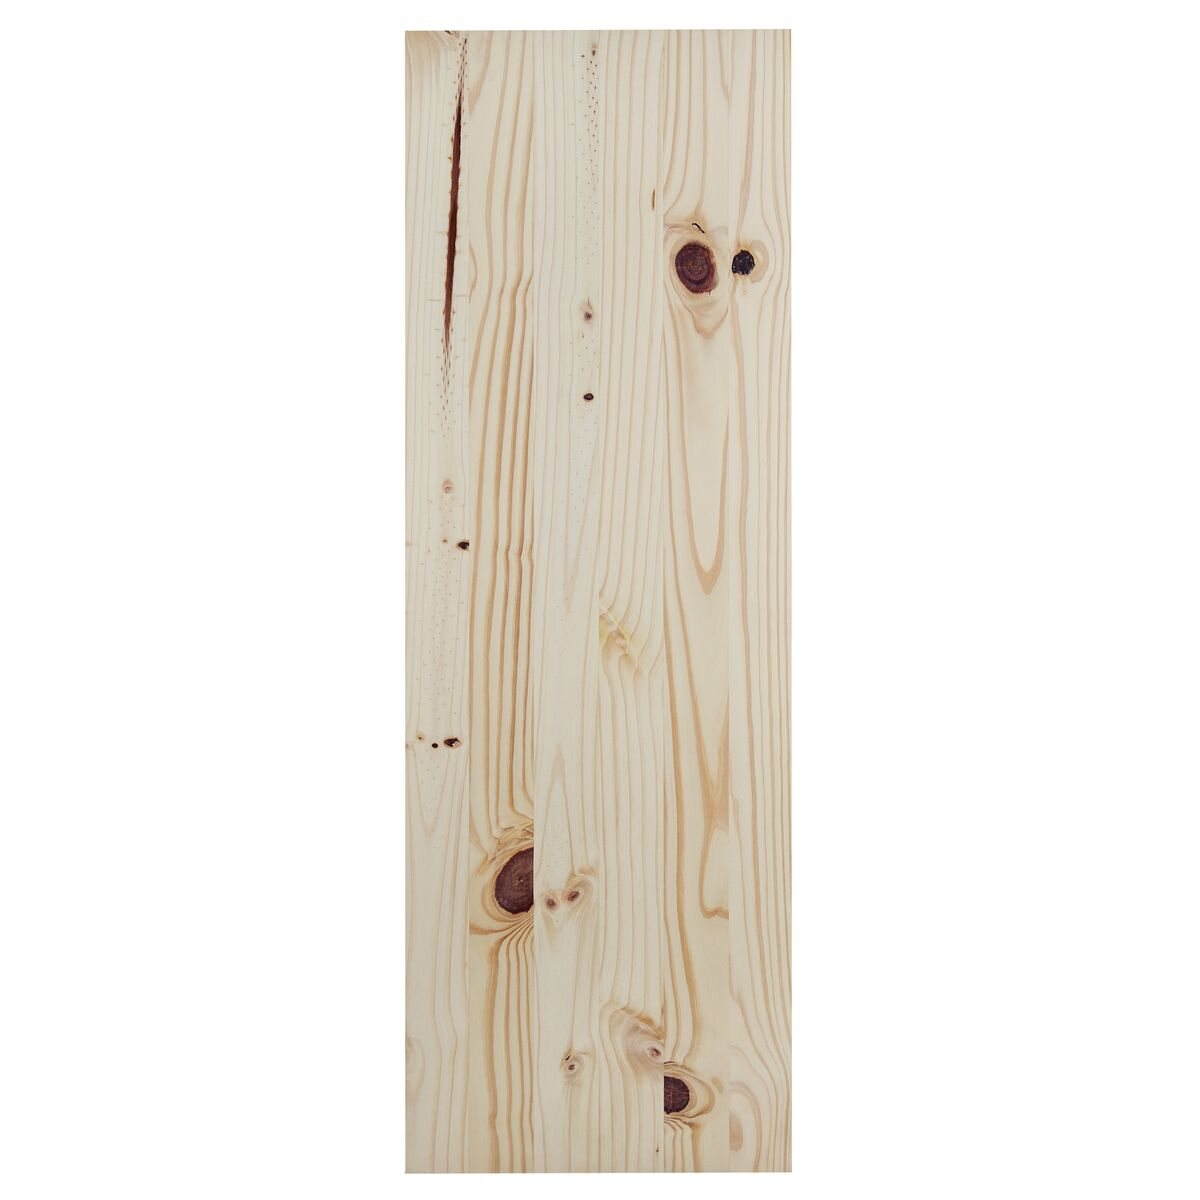 
Painel Tramontina Modulare em Madeira Pinus com Acabamento Natural CC 1500x300x18 mm
